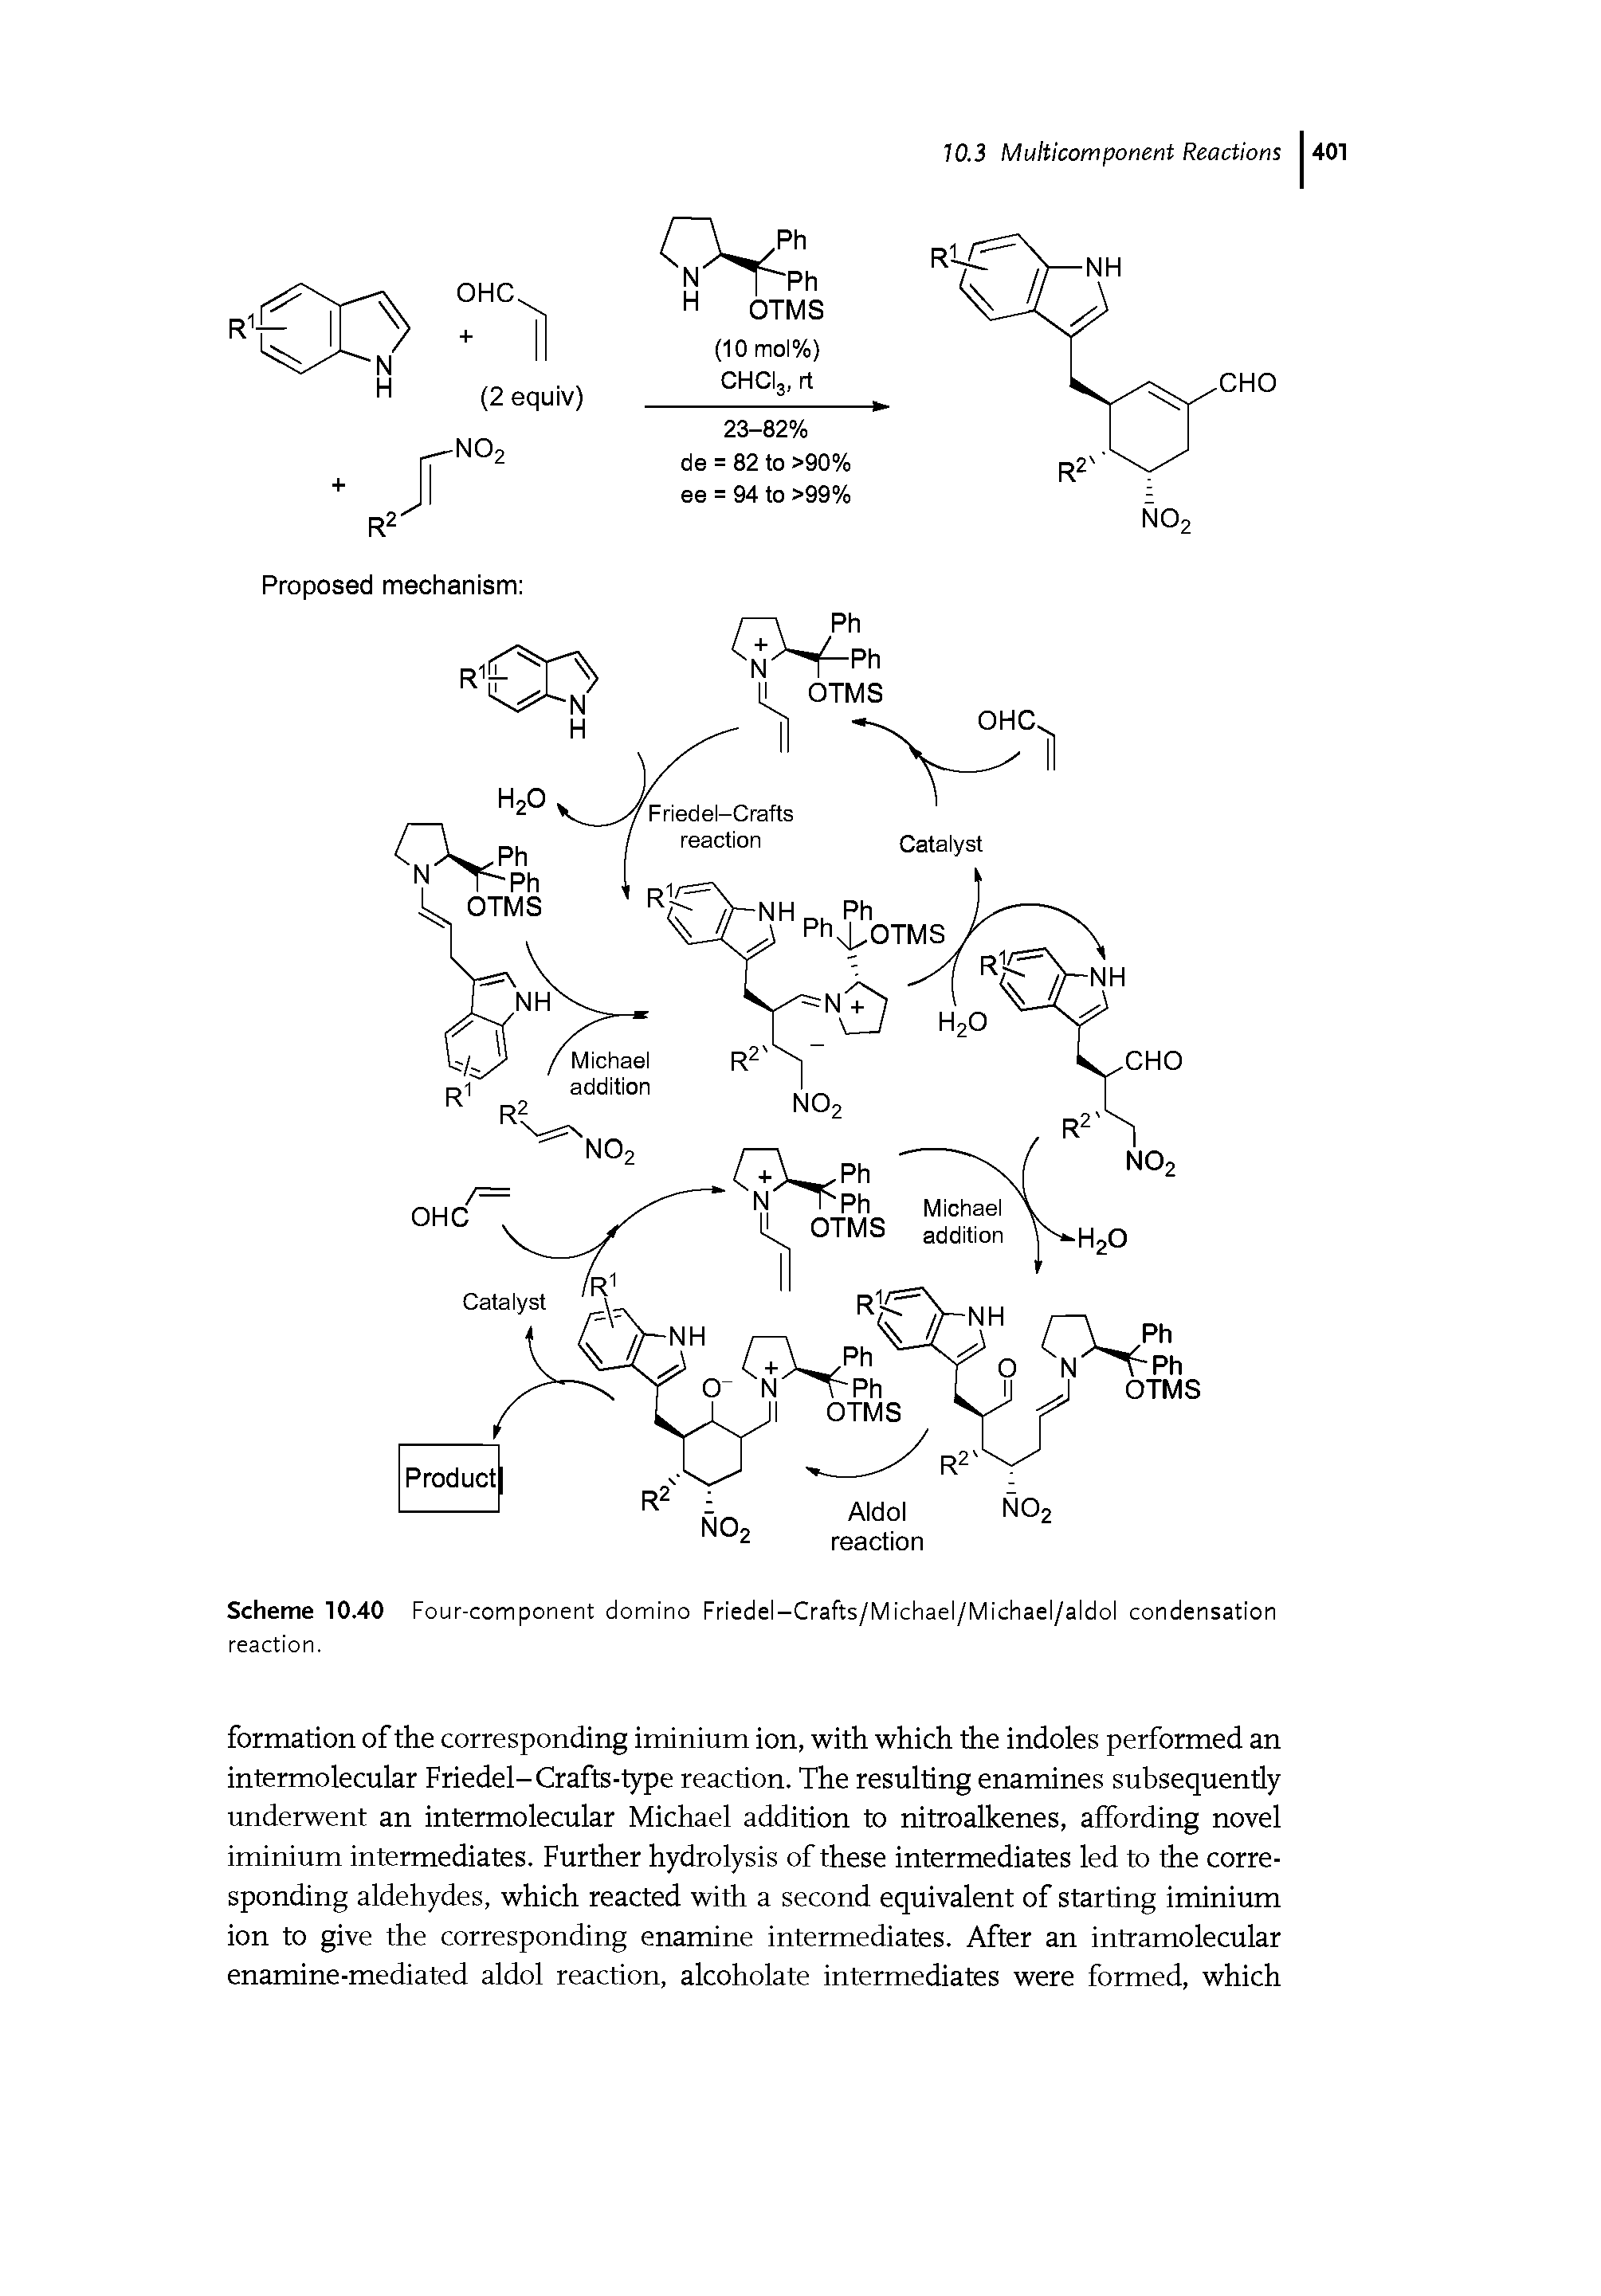 Scheme 10.40 Four-component domino Friedel-Crafts/Michael/Michael/aldol condensation reaction.